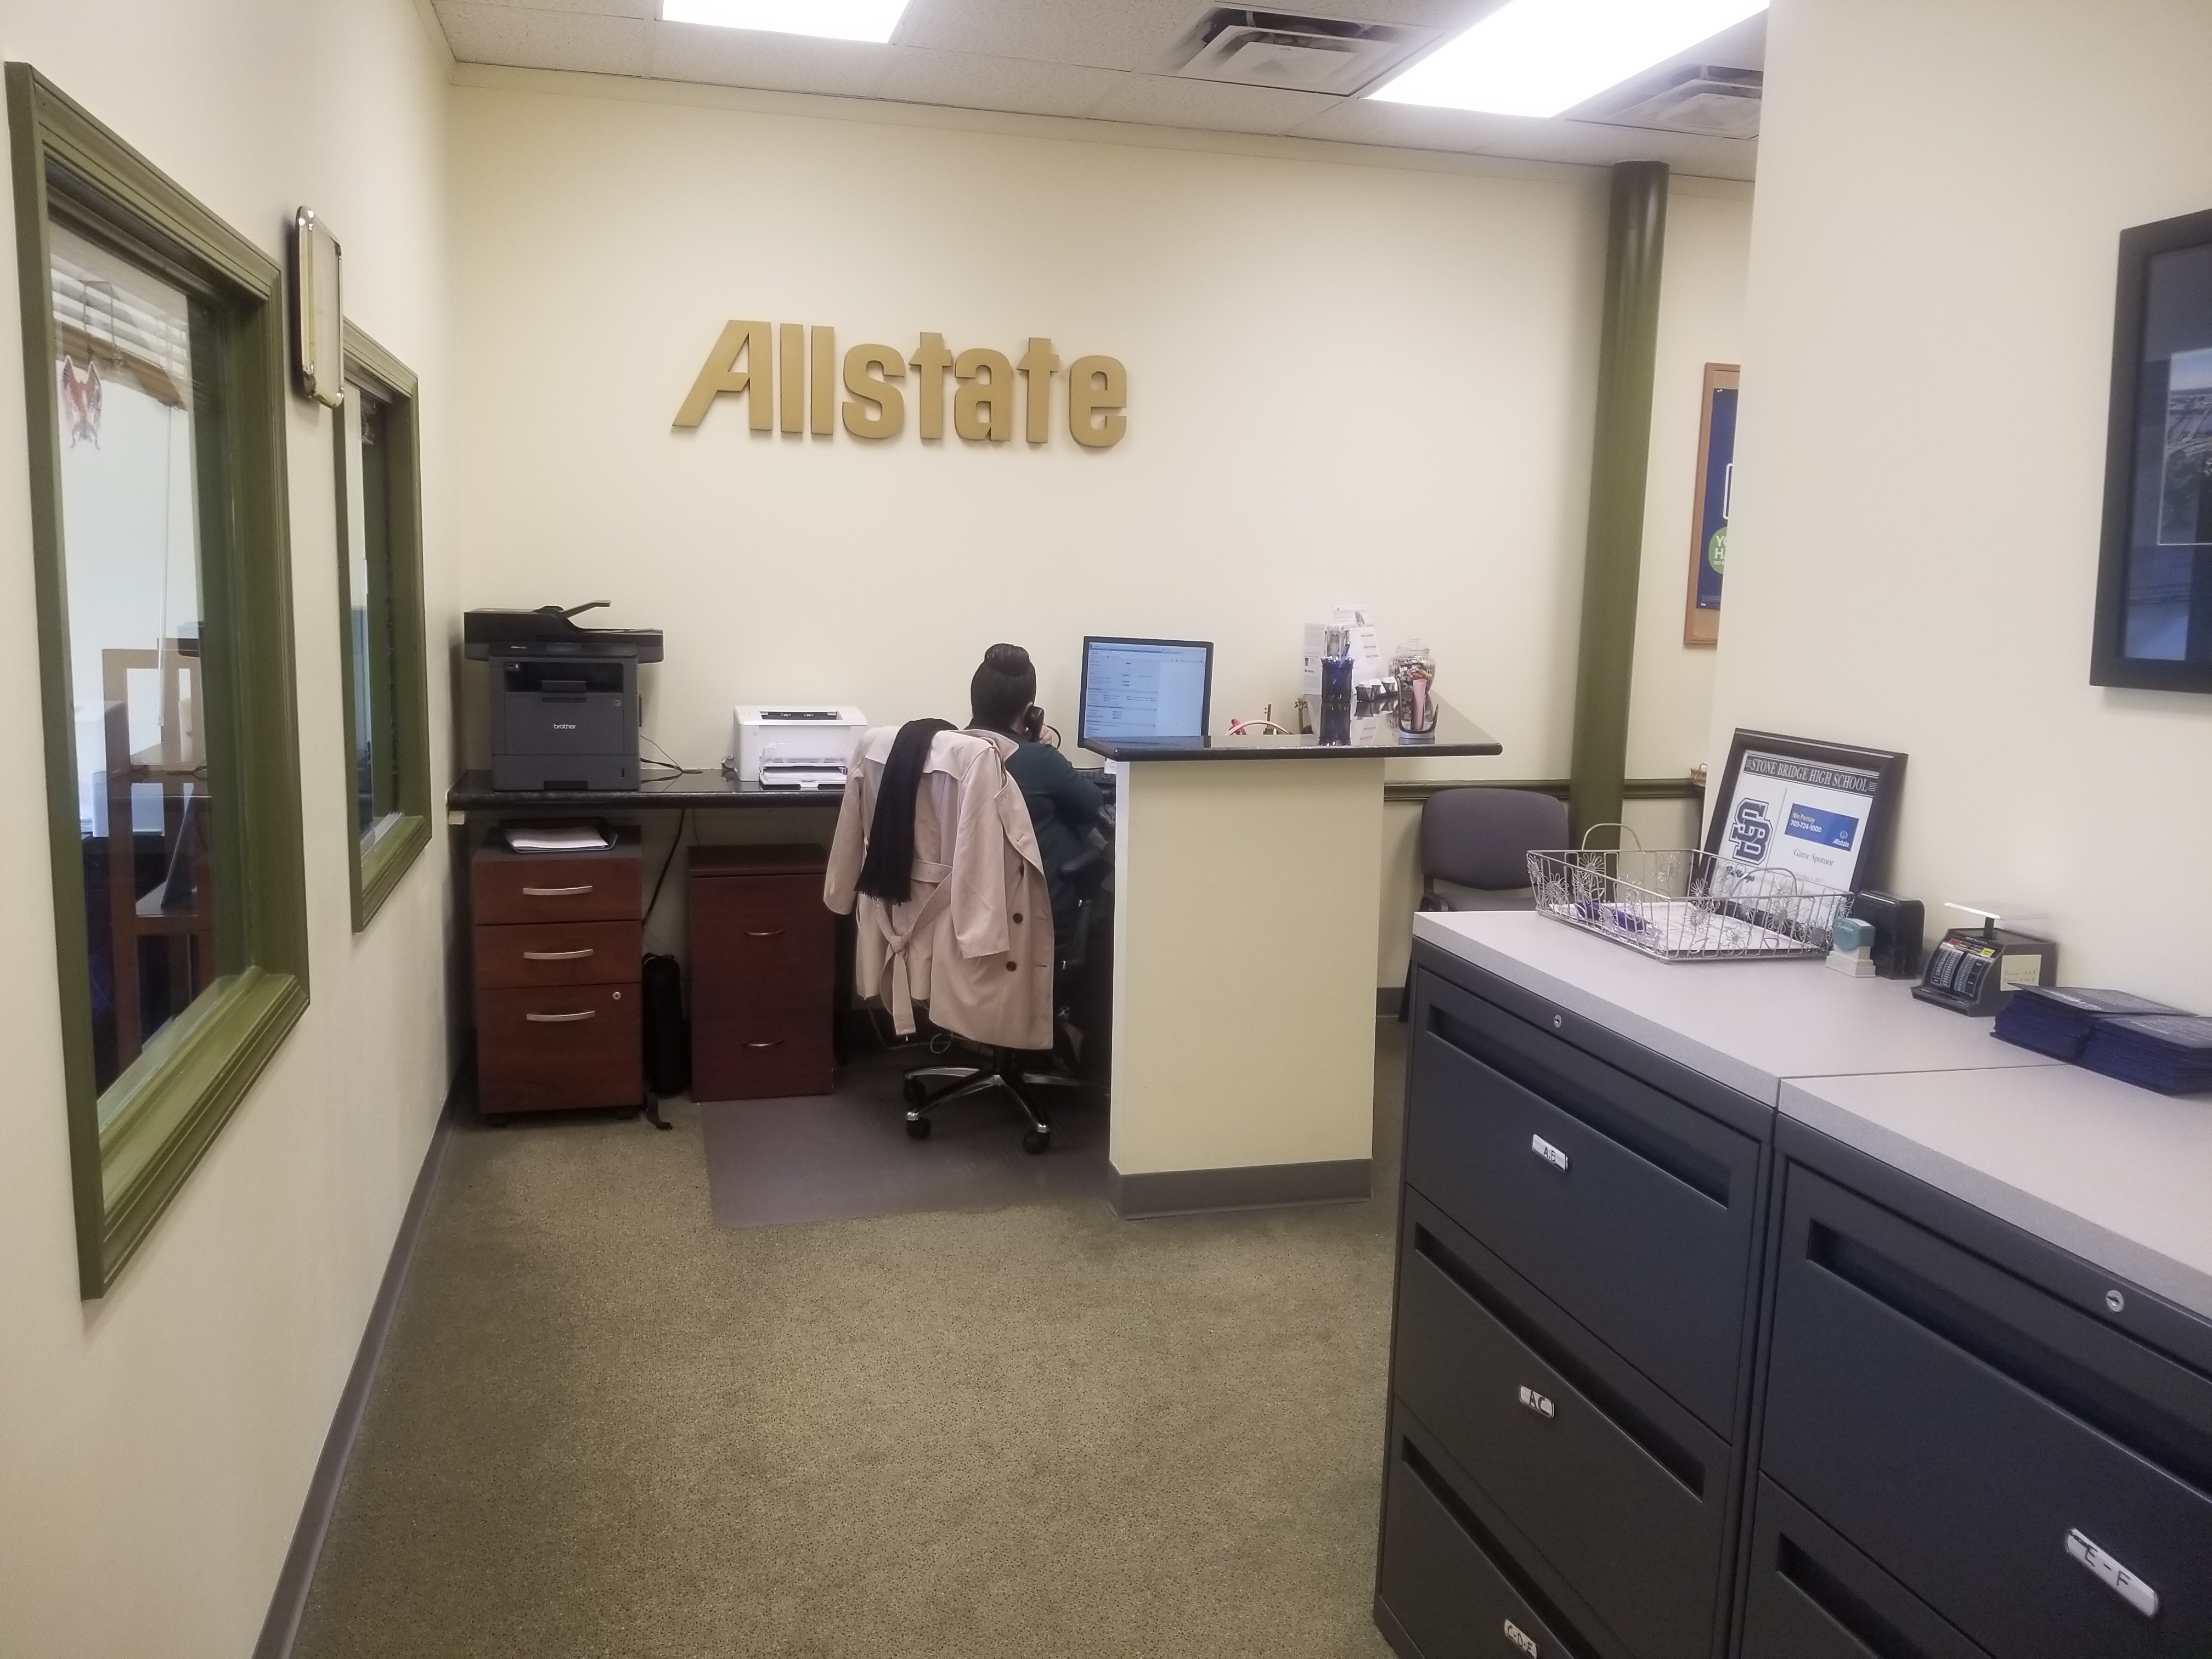 Derege Denu: Allstate Insurance Photo